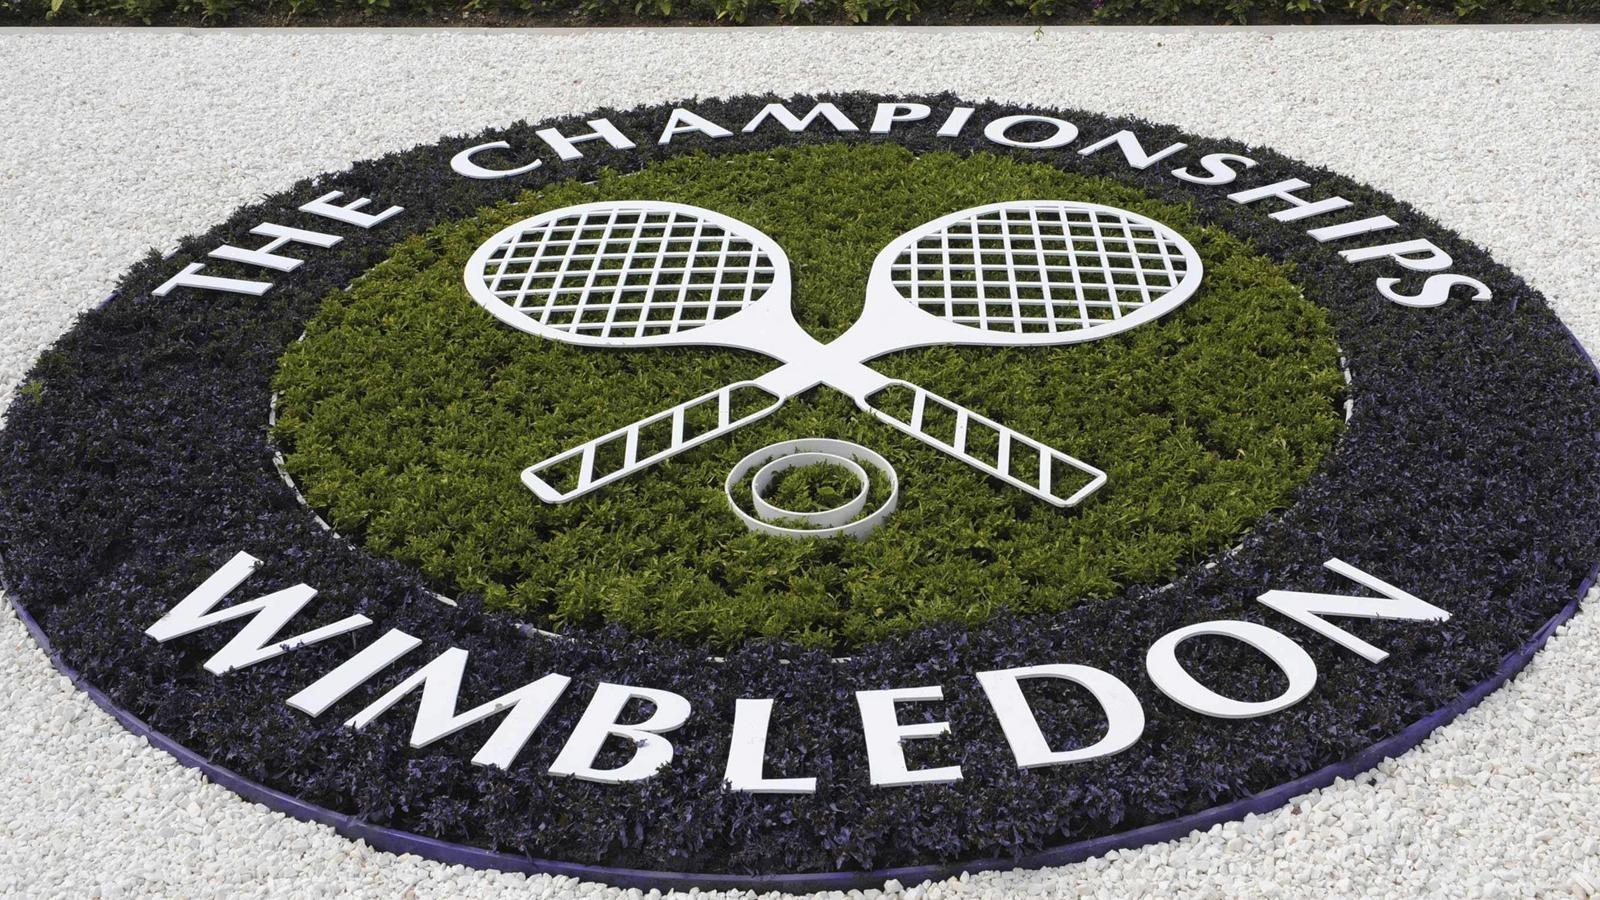  Теннисный турнир Wimbledon 2017